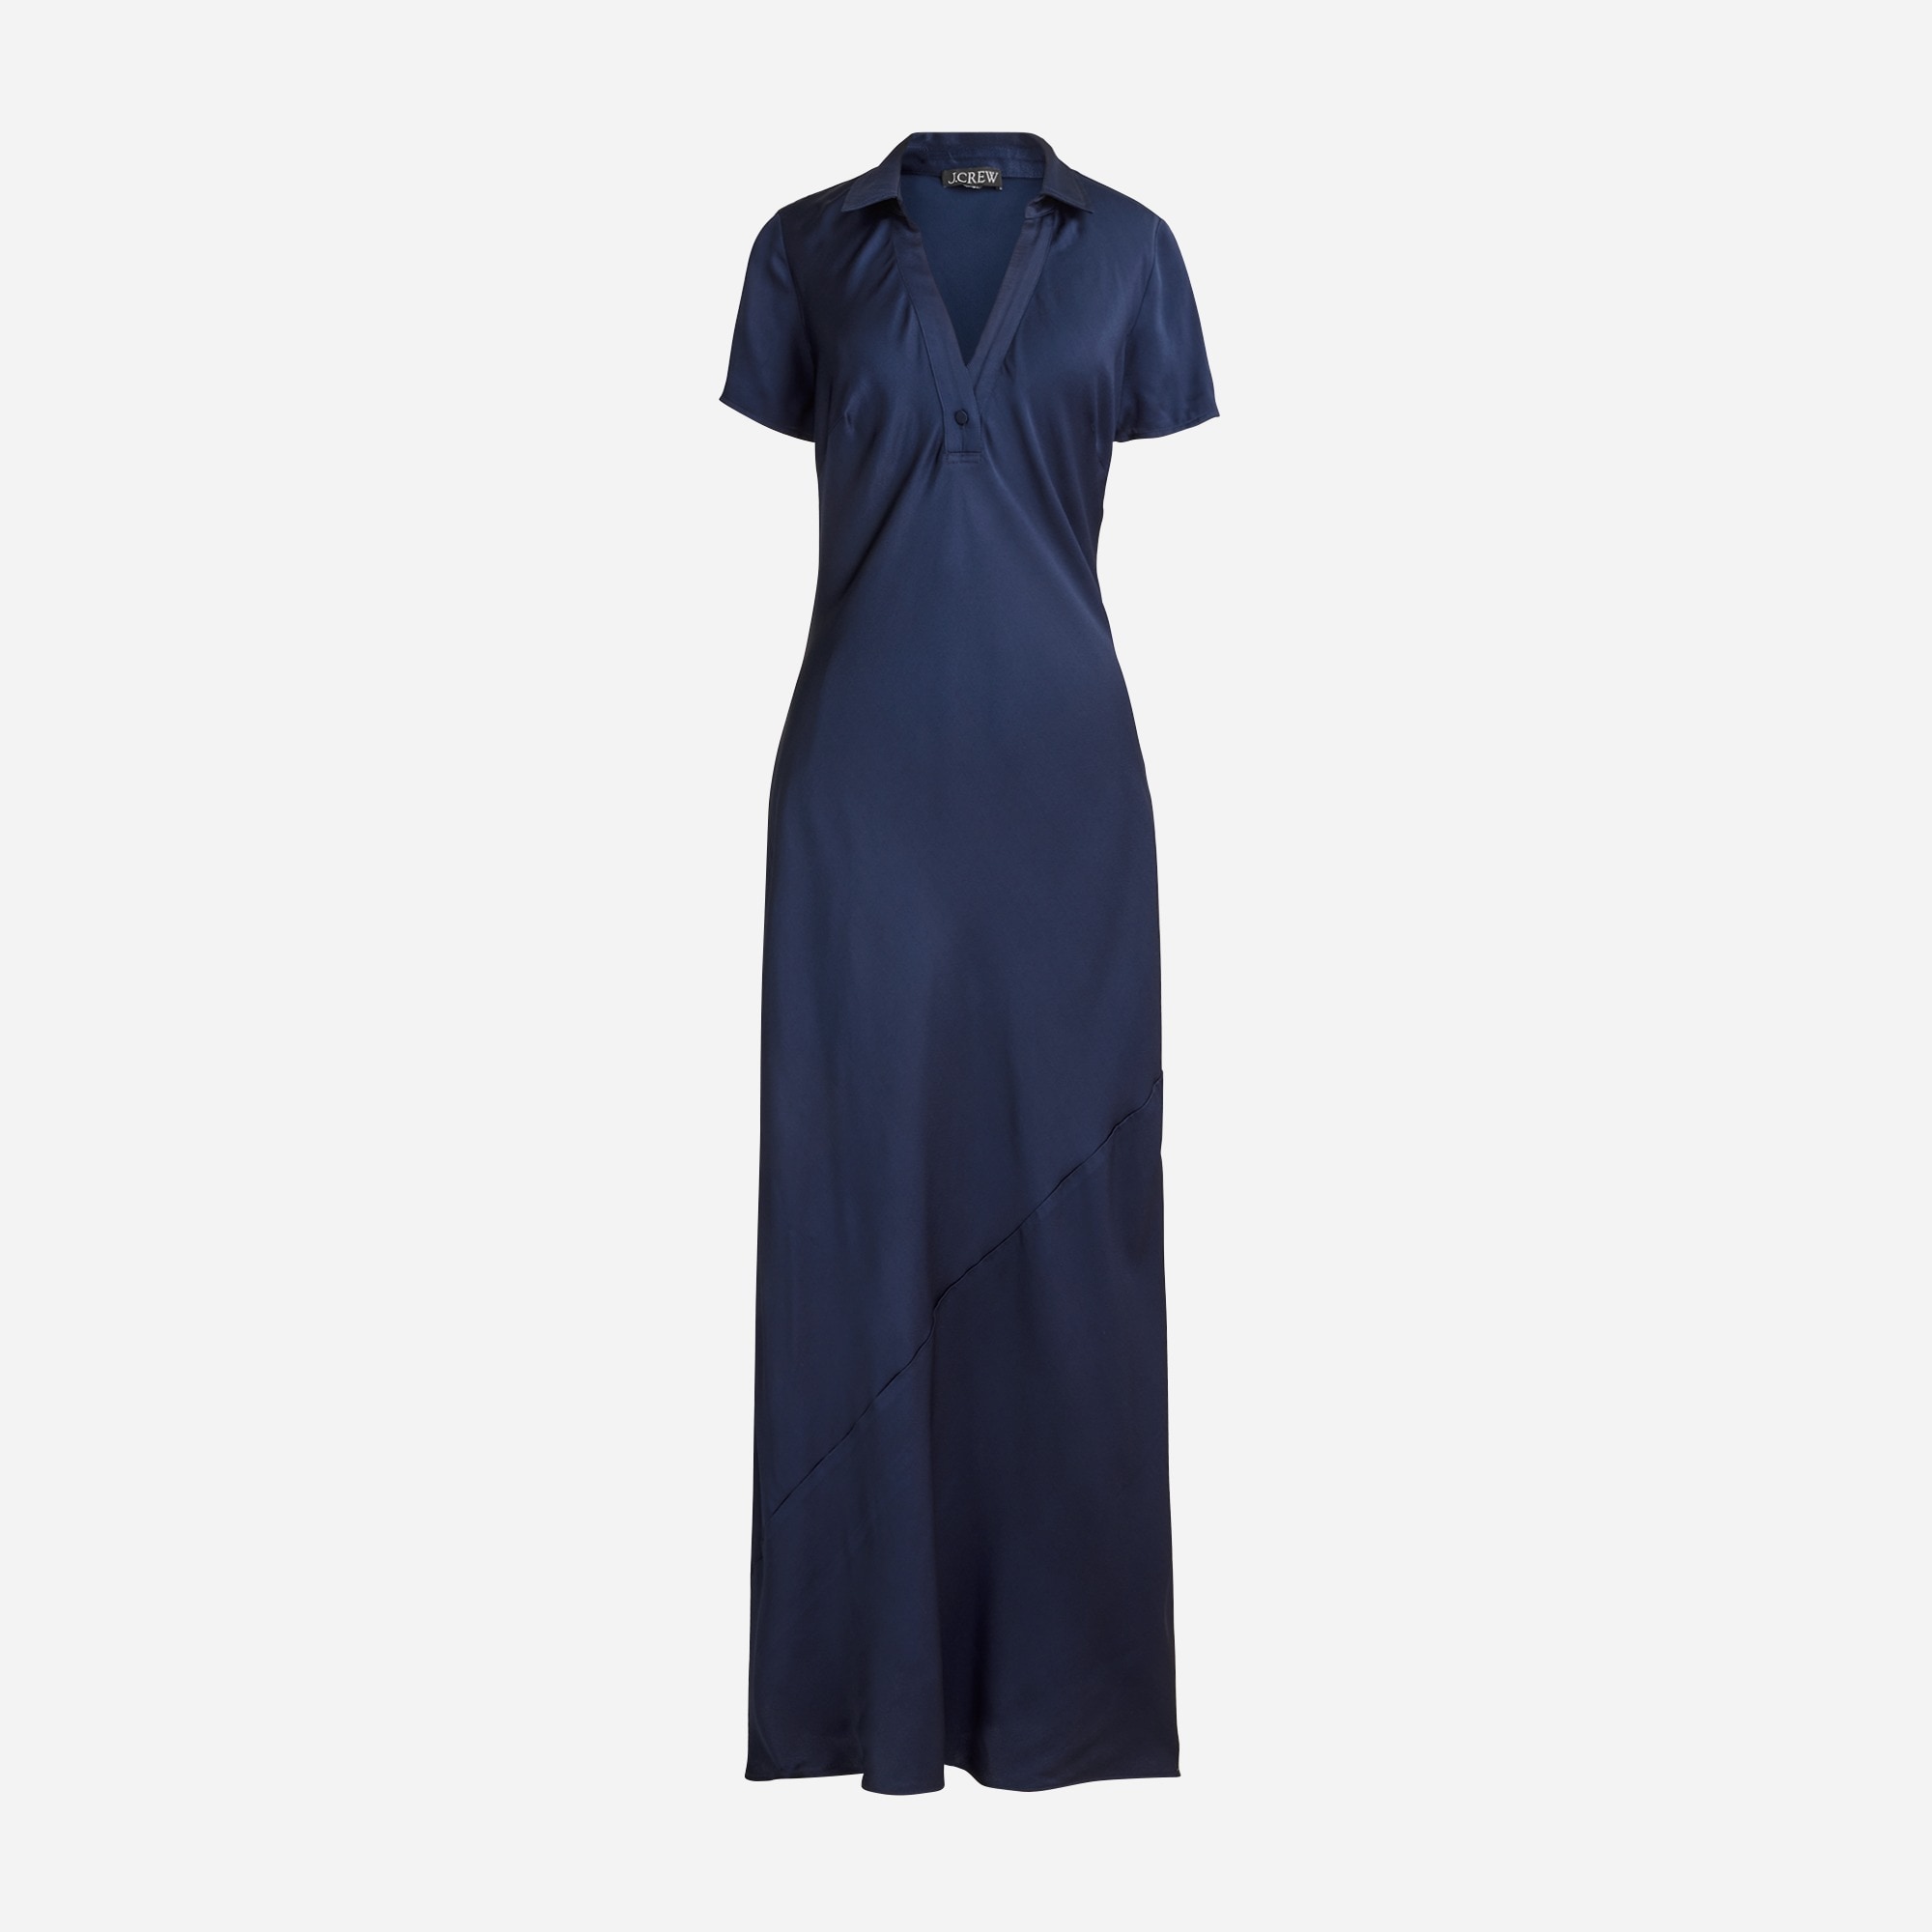  Short-sleeve maxi slip dress in luster crepe